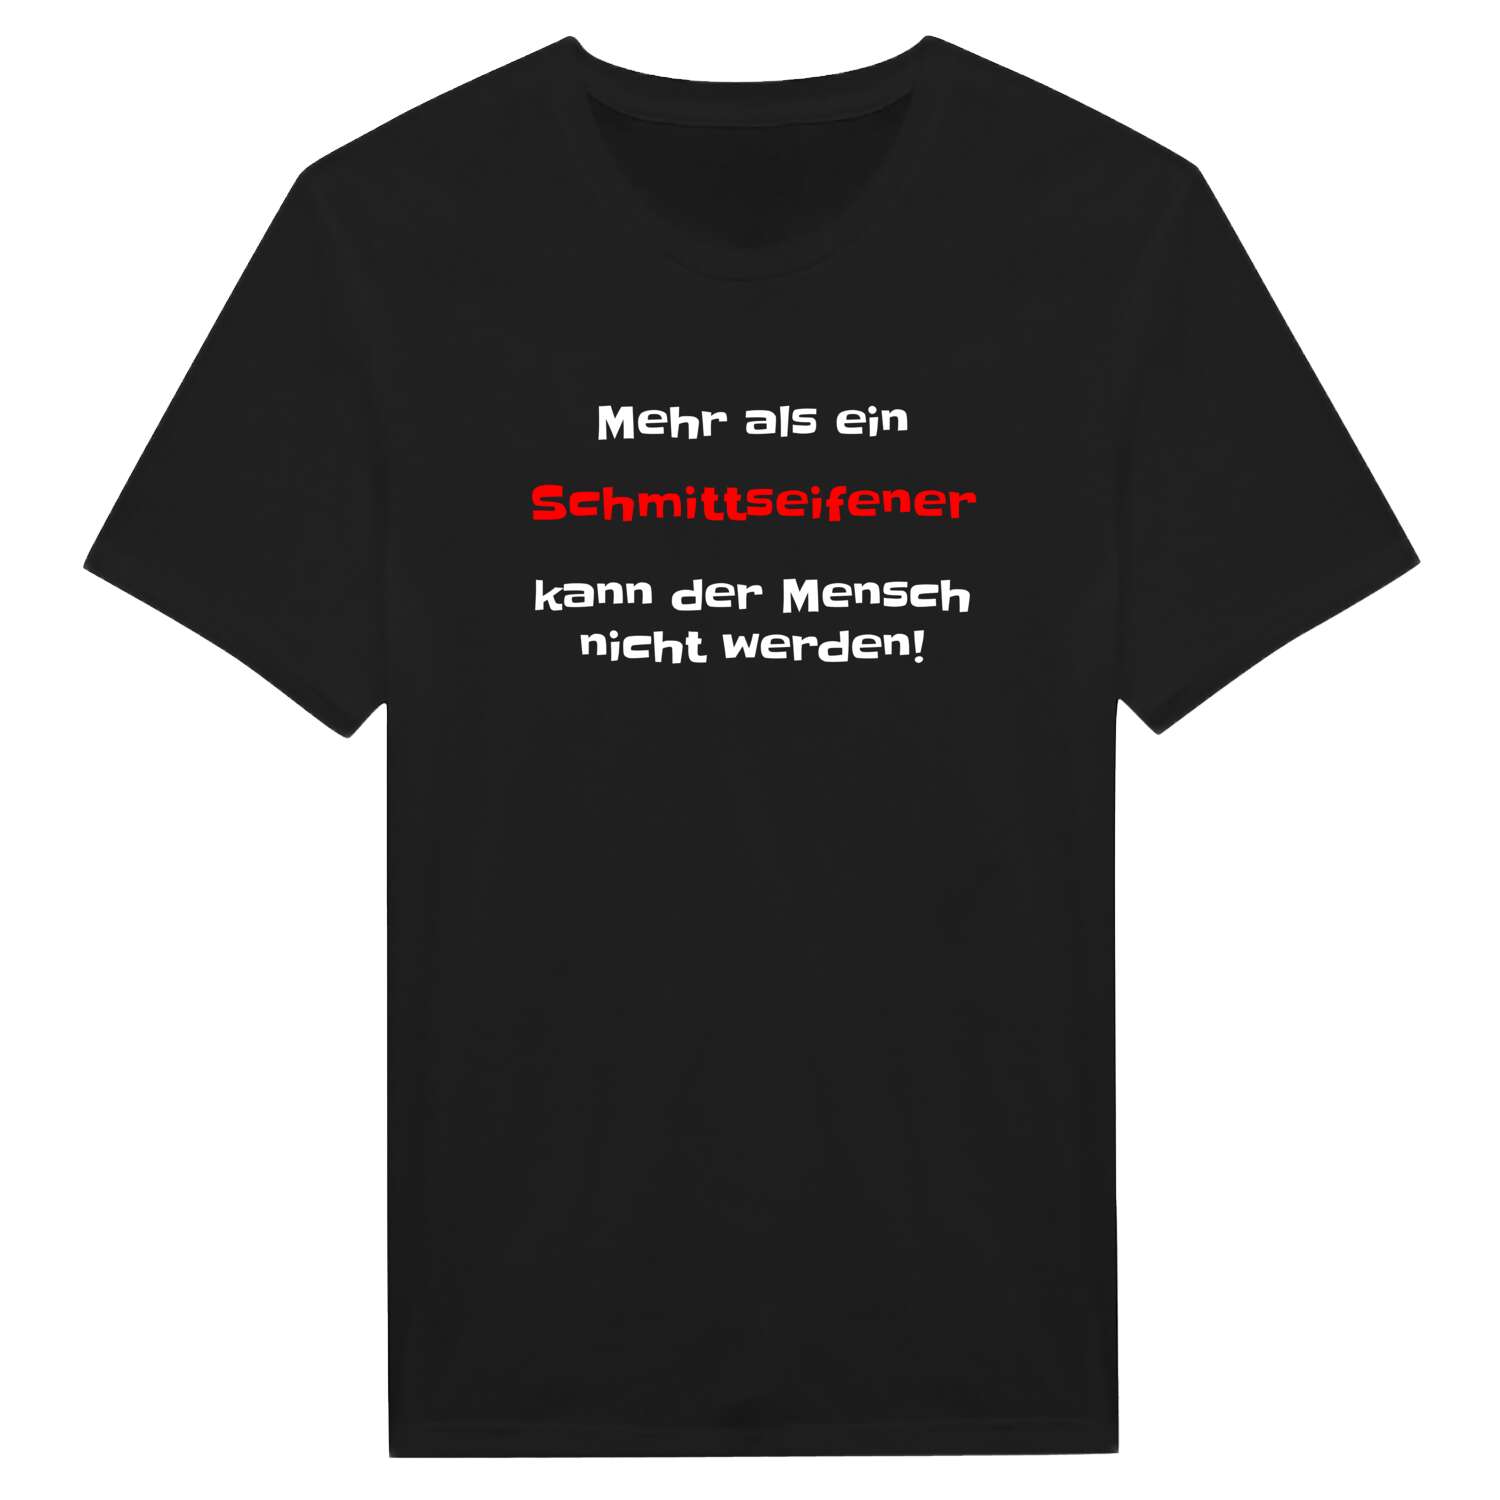 Schmittseifen T-Shirt »Mehr als ein«